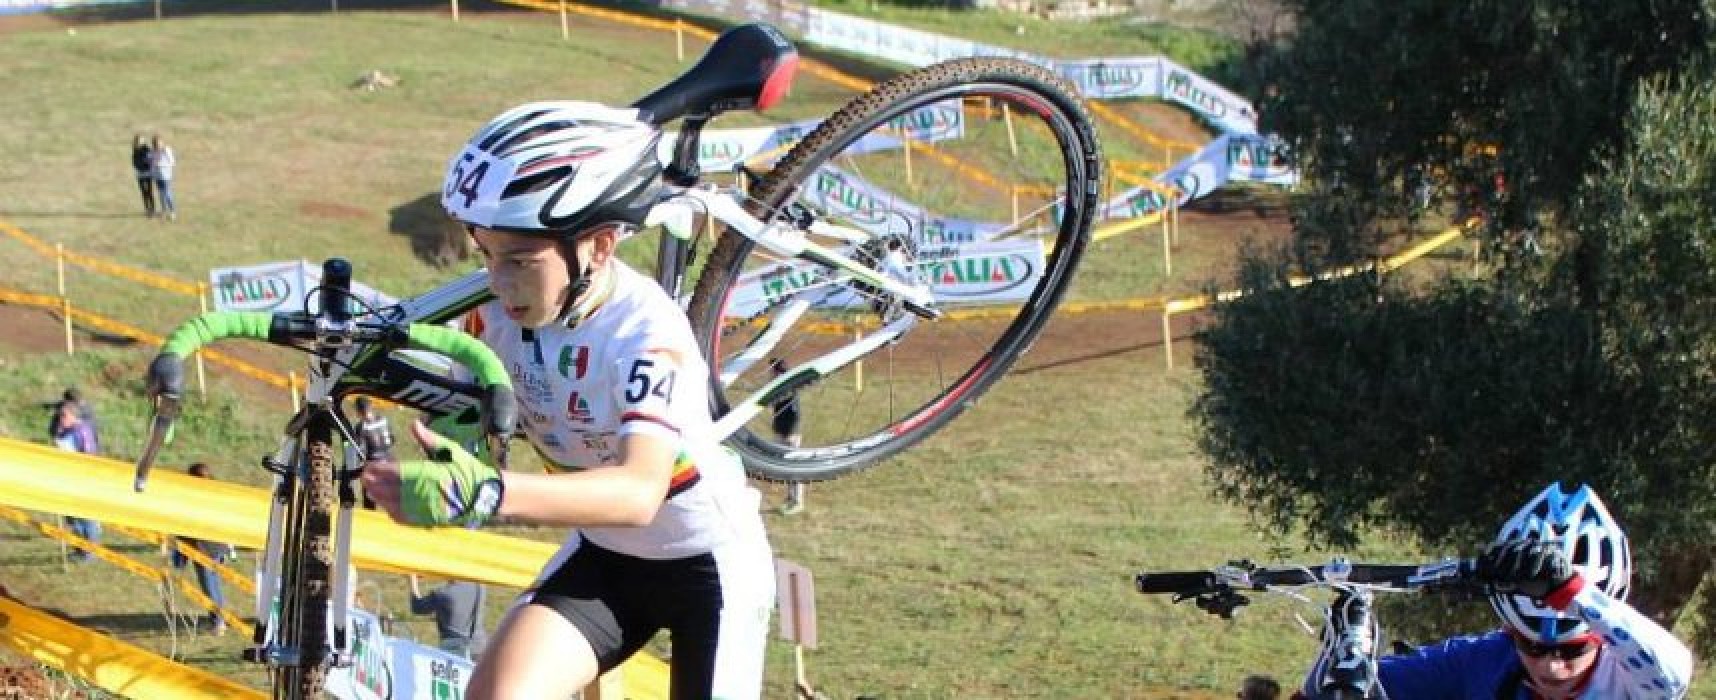 Cavallaro in chiaroscuro ai Campionati Italiani Ciclocross